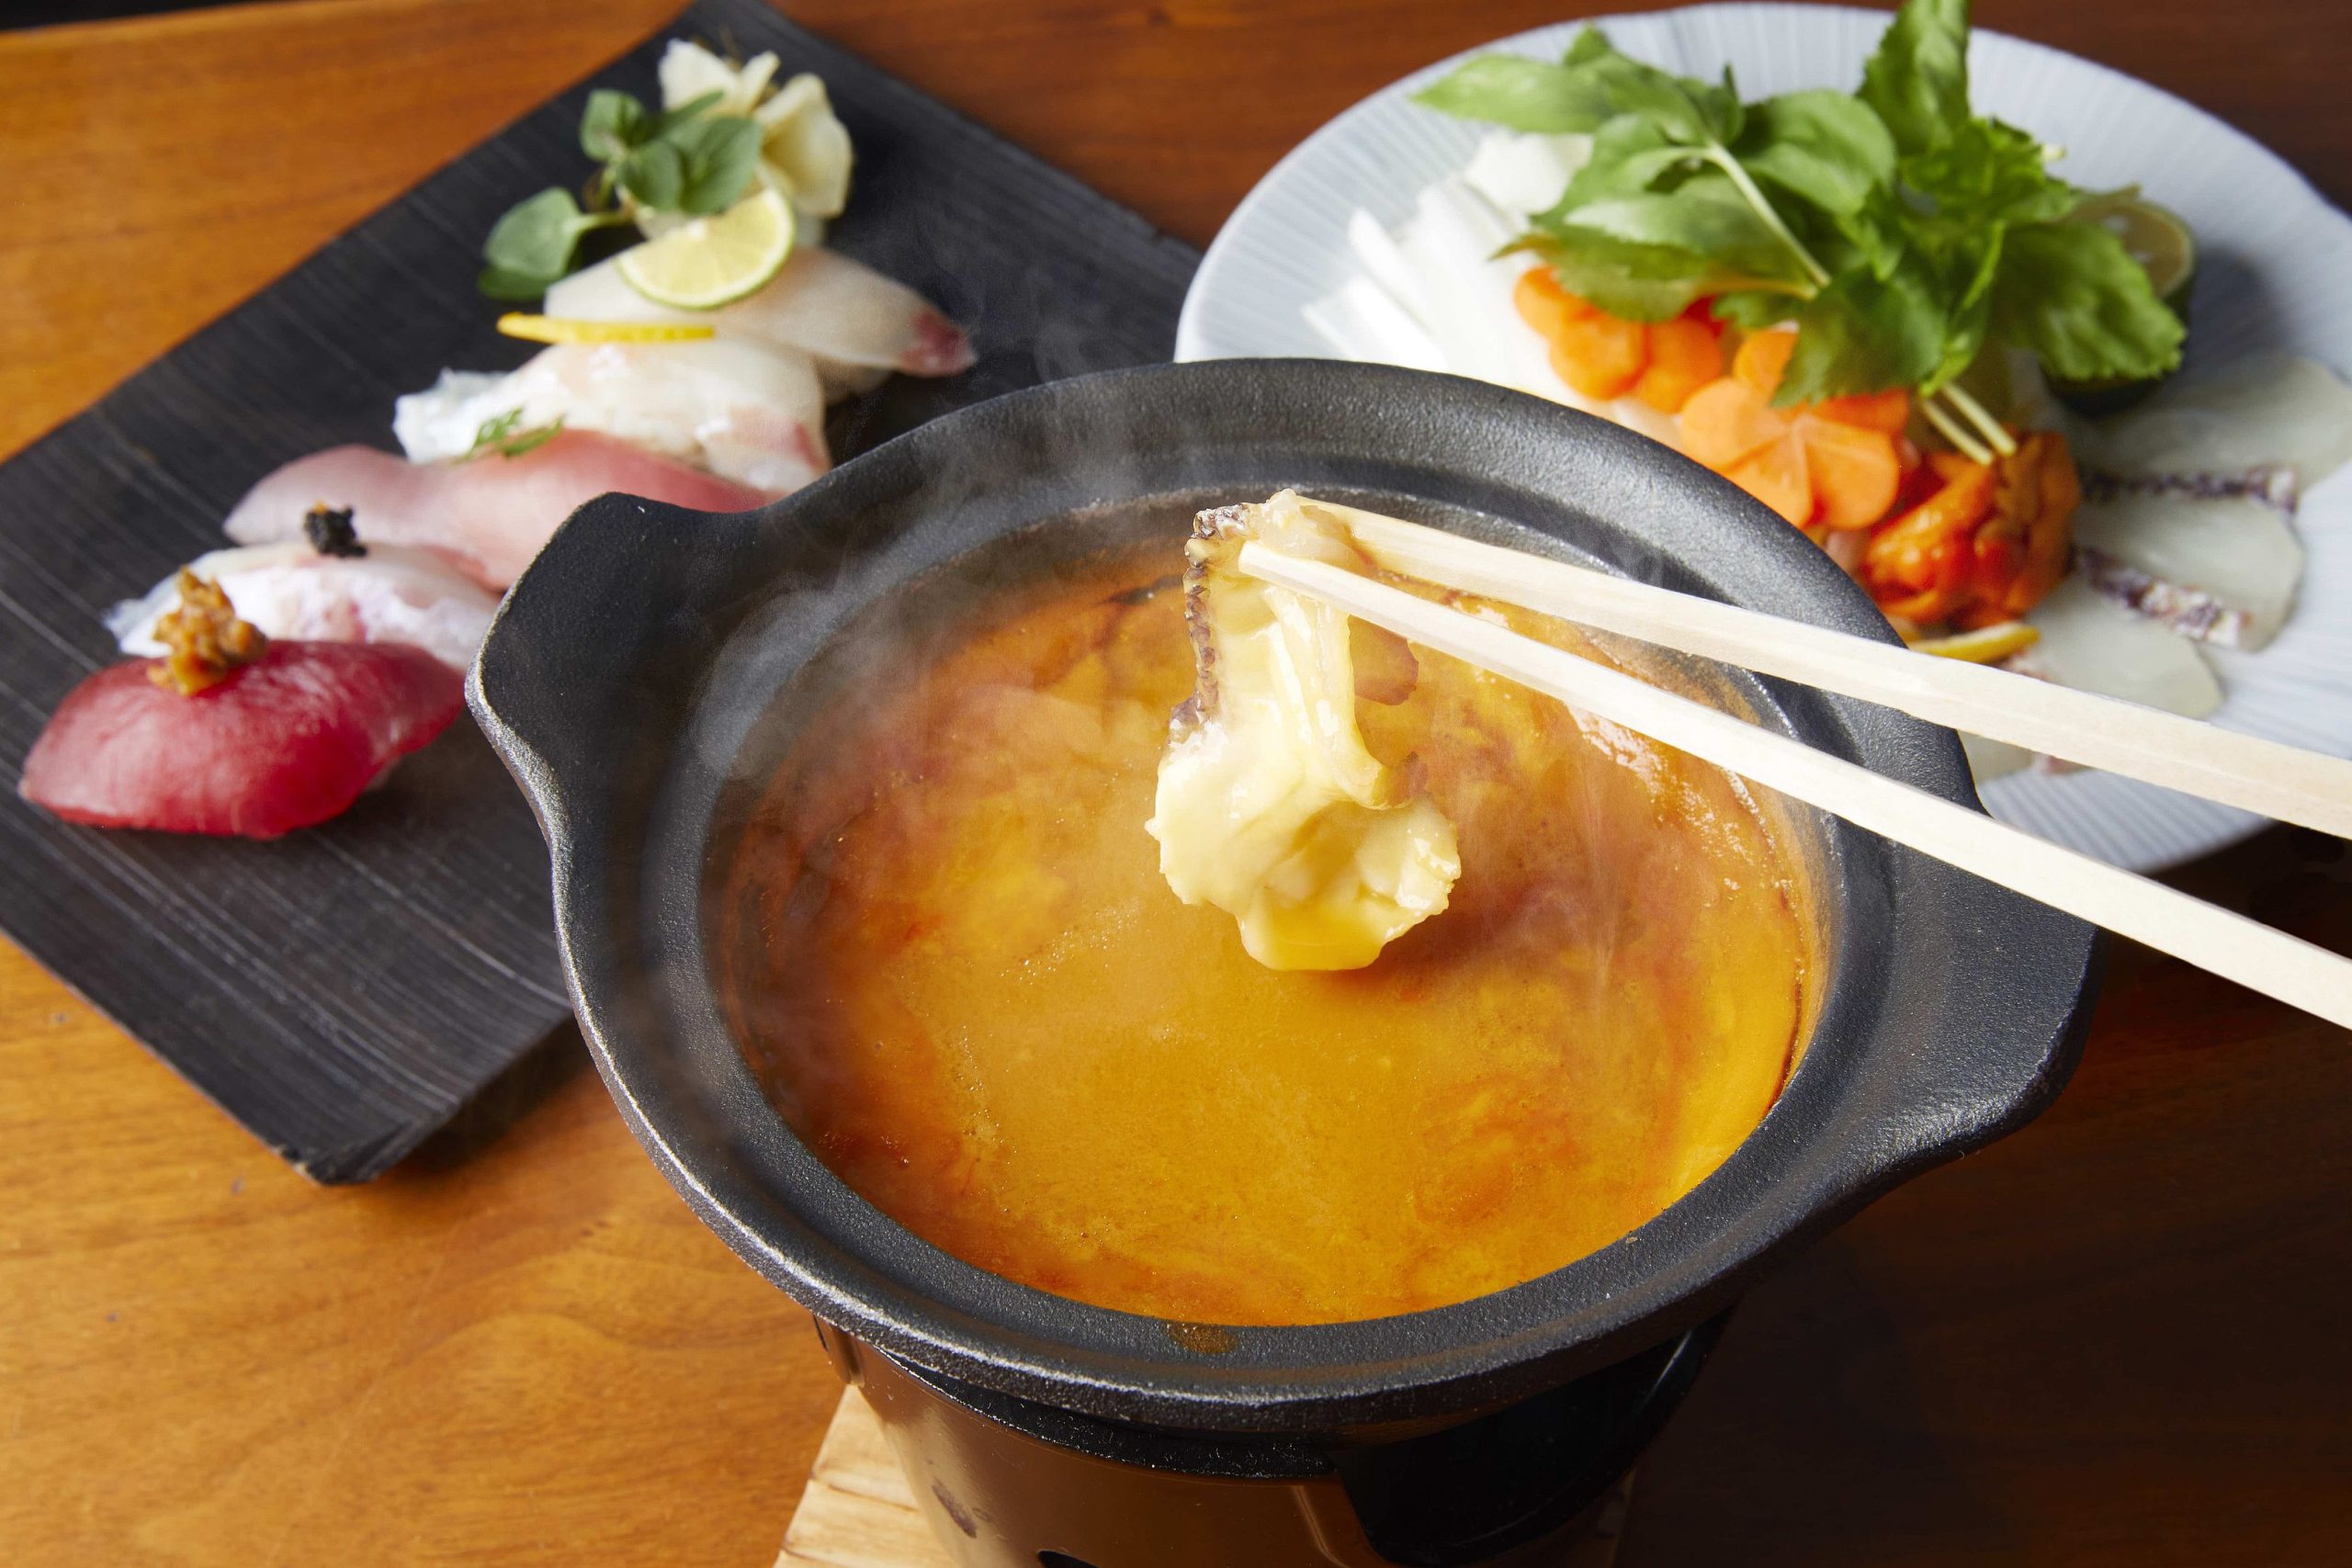 雲丹鍋 でほっと温まる 東京ミッドタウンに冬のごちそうが大集合 食べログマガジン